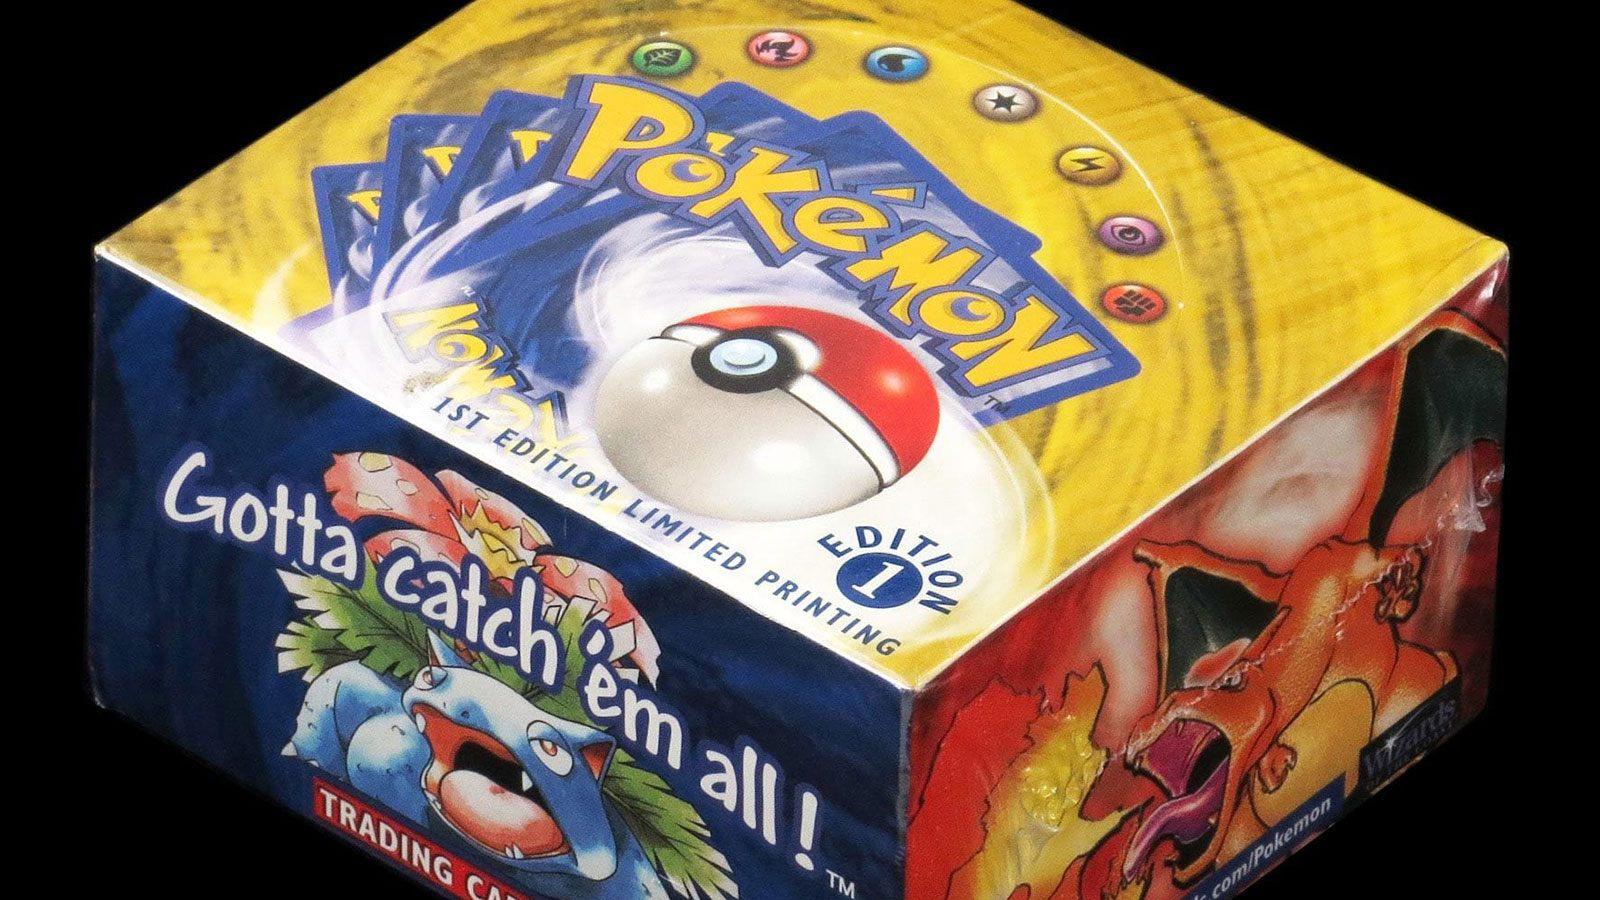 Une boîte de cartes Pokémon s'est vendue aux enchères plus de 400 000 $US